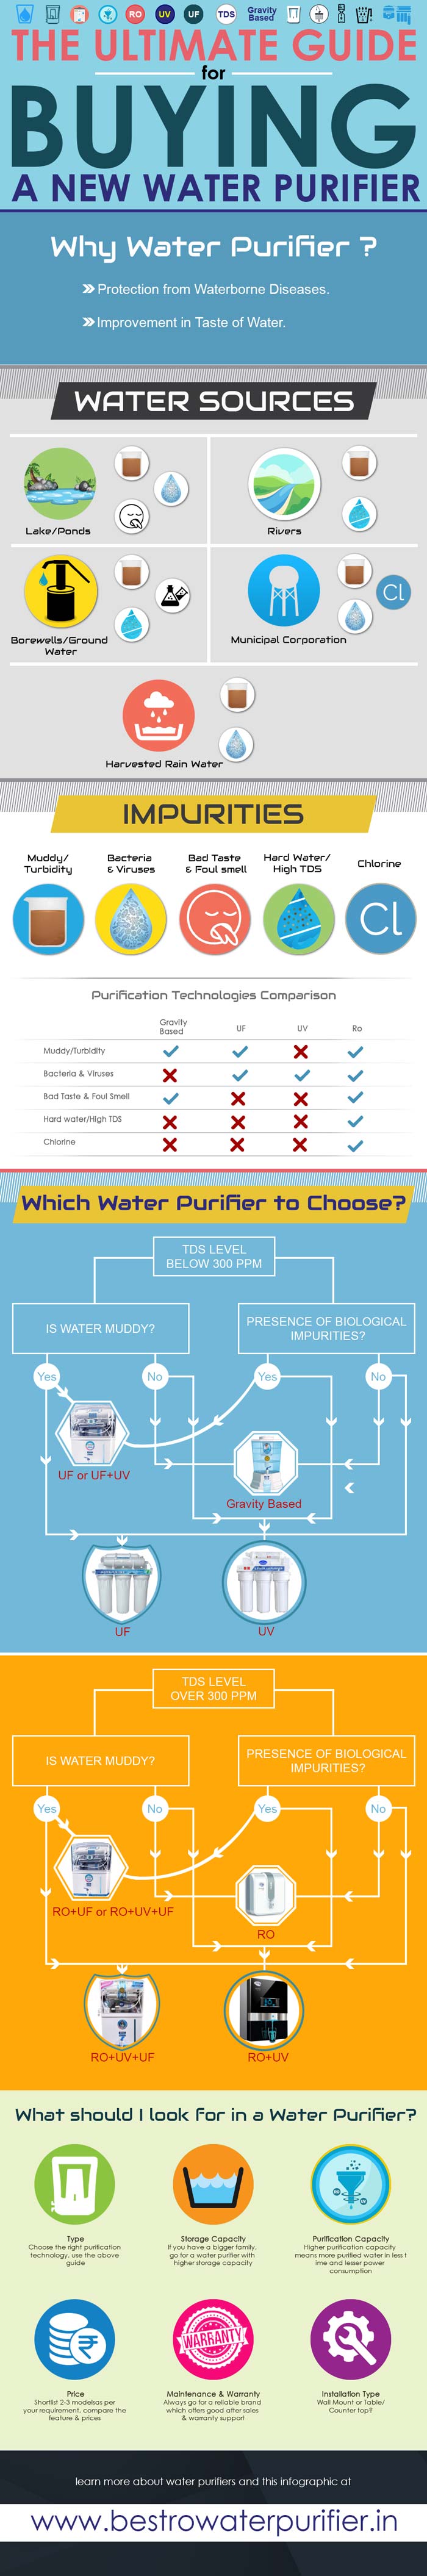 Water purifier buying guide